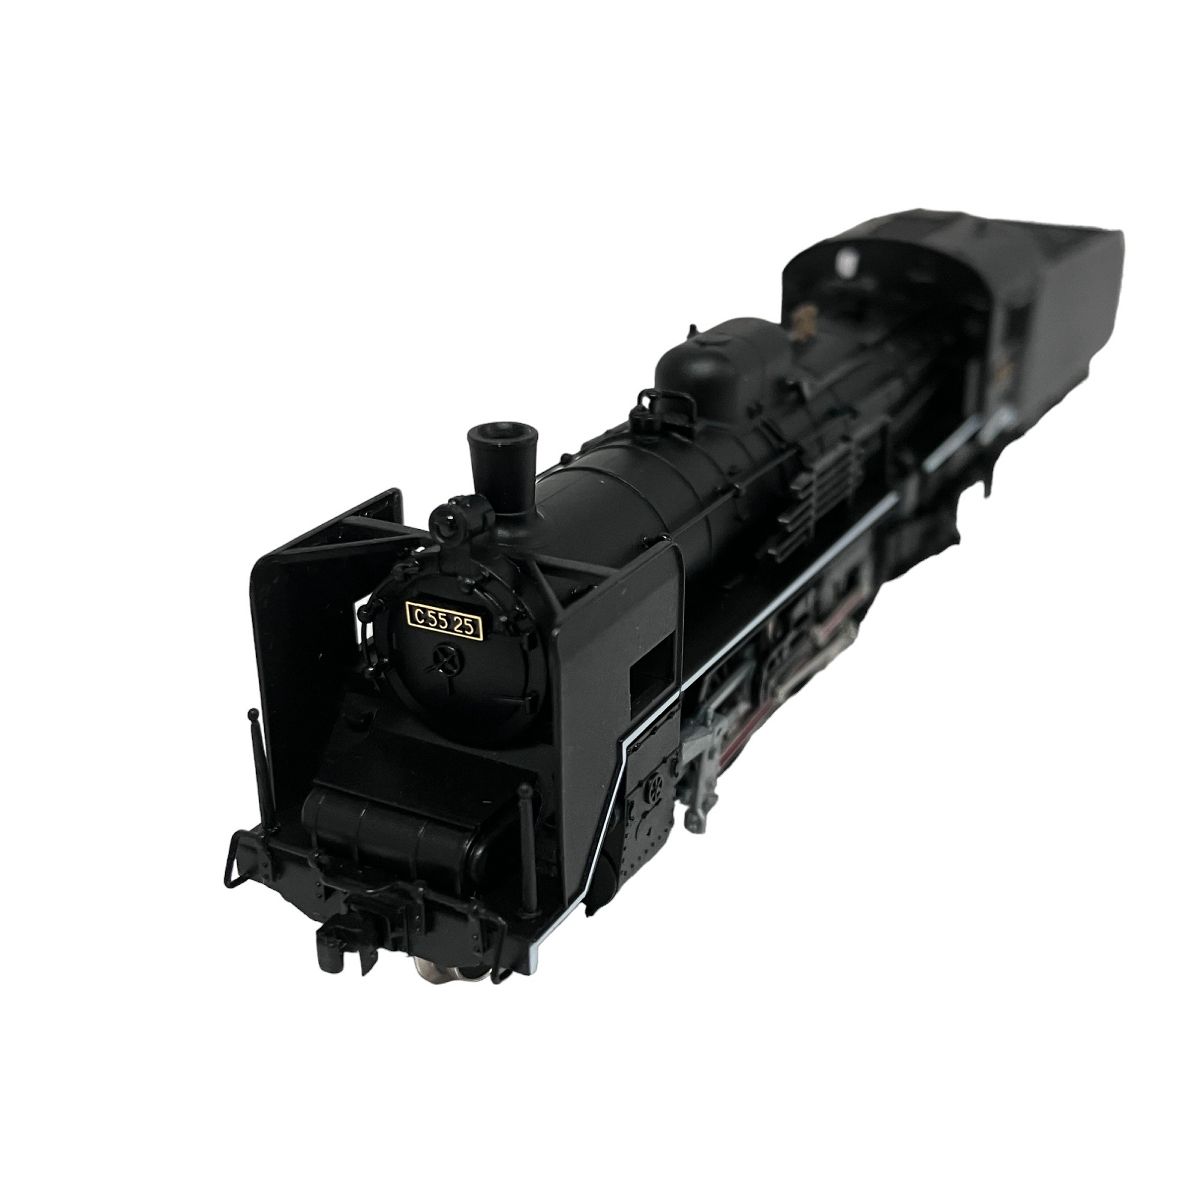 動作保証】MICRO ACE A7102 C55-25 2次形改造 蒸気機関車 マイクロエース Nゲージ 鉄道模型 F8867236 - メルカリ